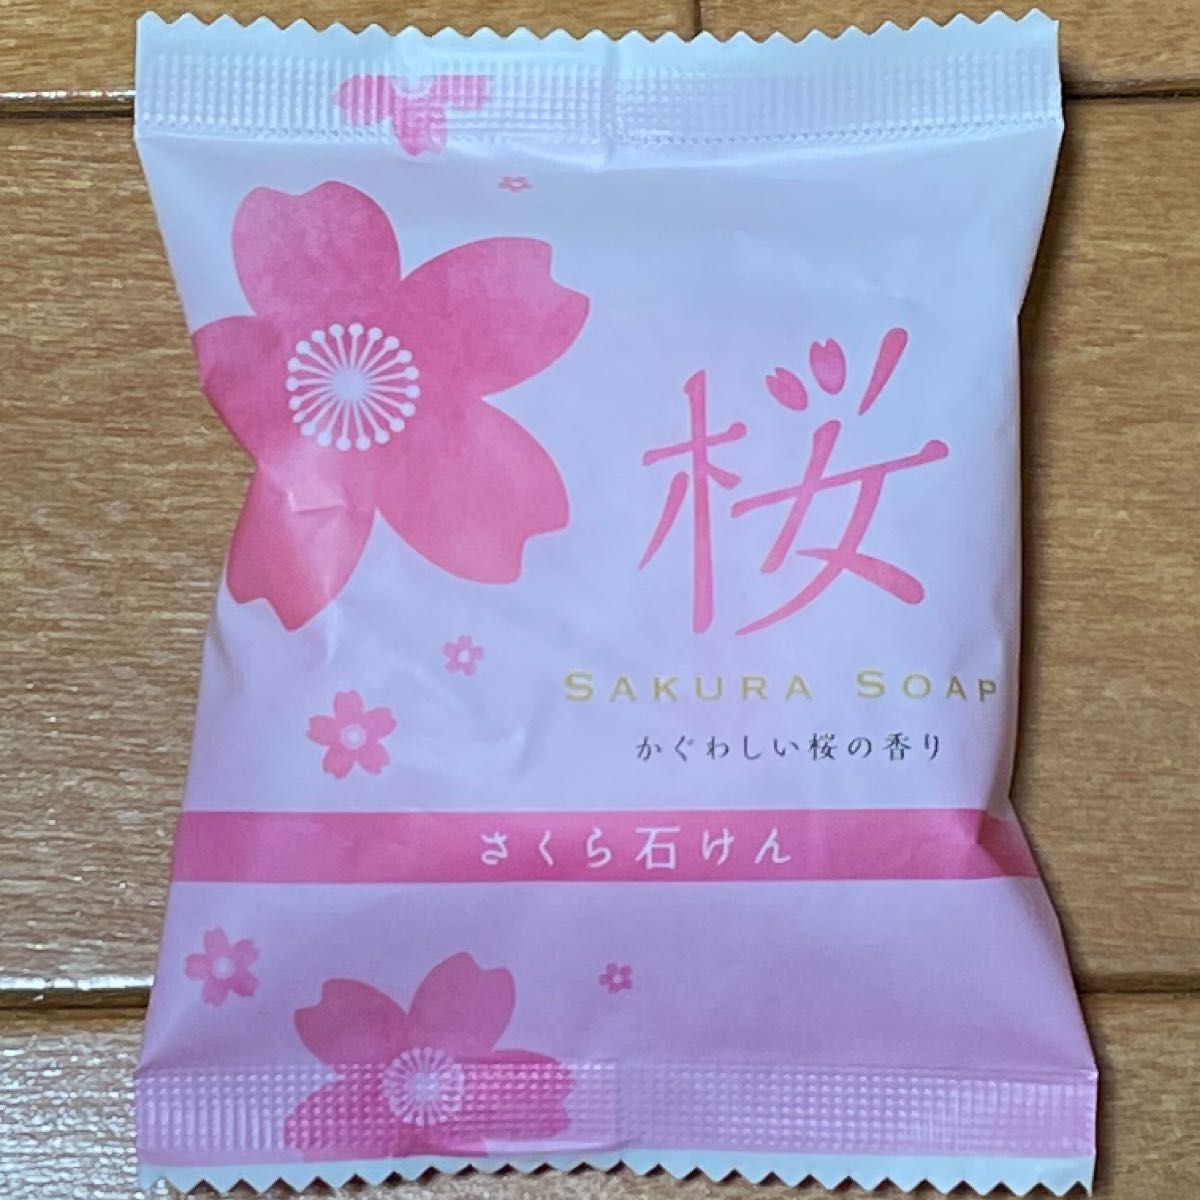 桜うどん(乾麺)、桜入浴剤、桜石鹸